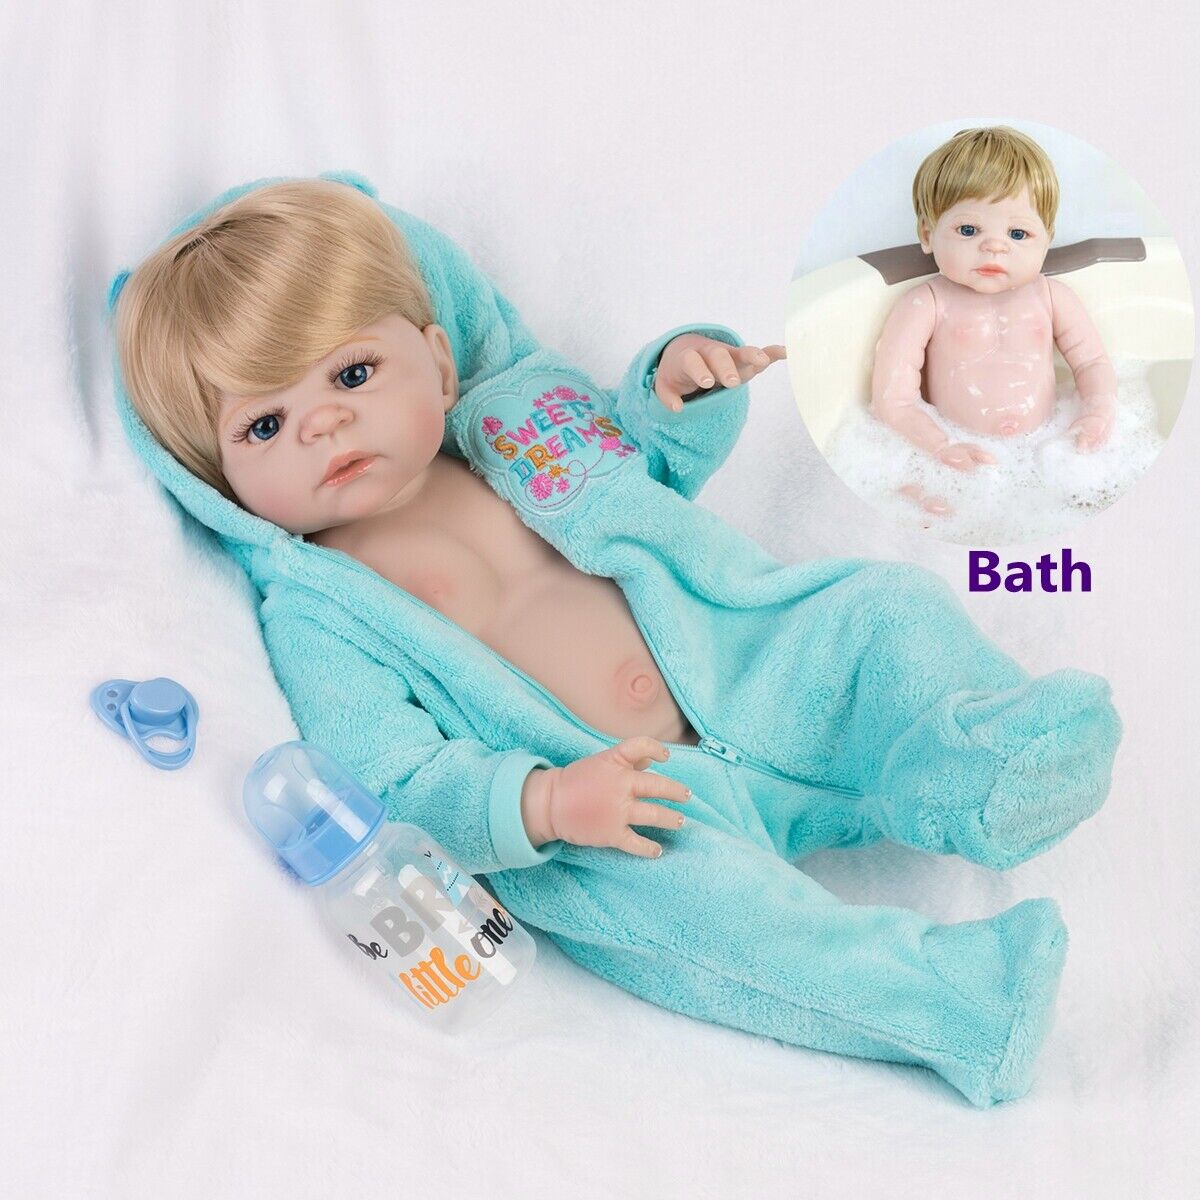 22" Realistic Reborn Baby Dolls Full Body Vinyl Silicone Girl Doll Newborn Bath